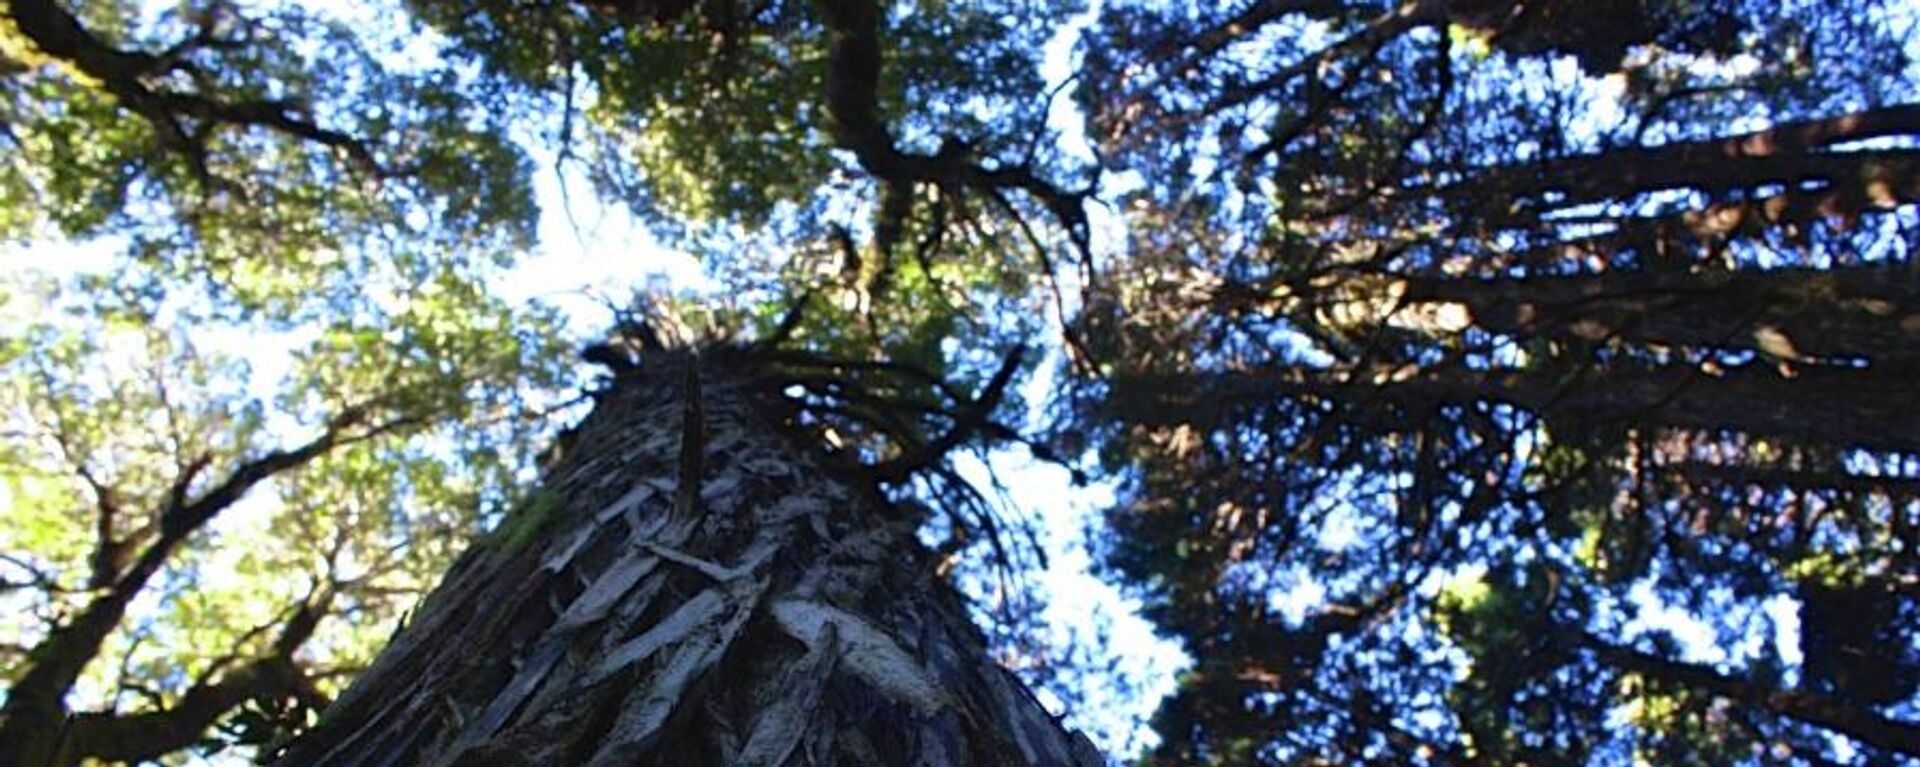 Alerce chileno de más de 5.000 años de antiguedad, el árbol más viejo del planeta  - Sputnik Mundo, 1920, 31.05.2022